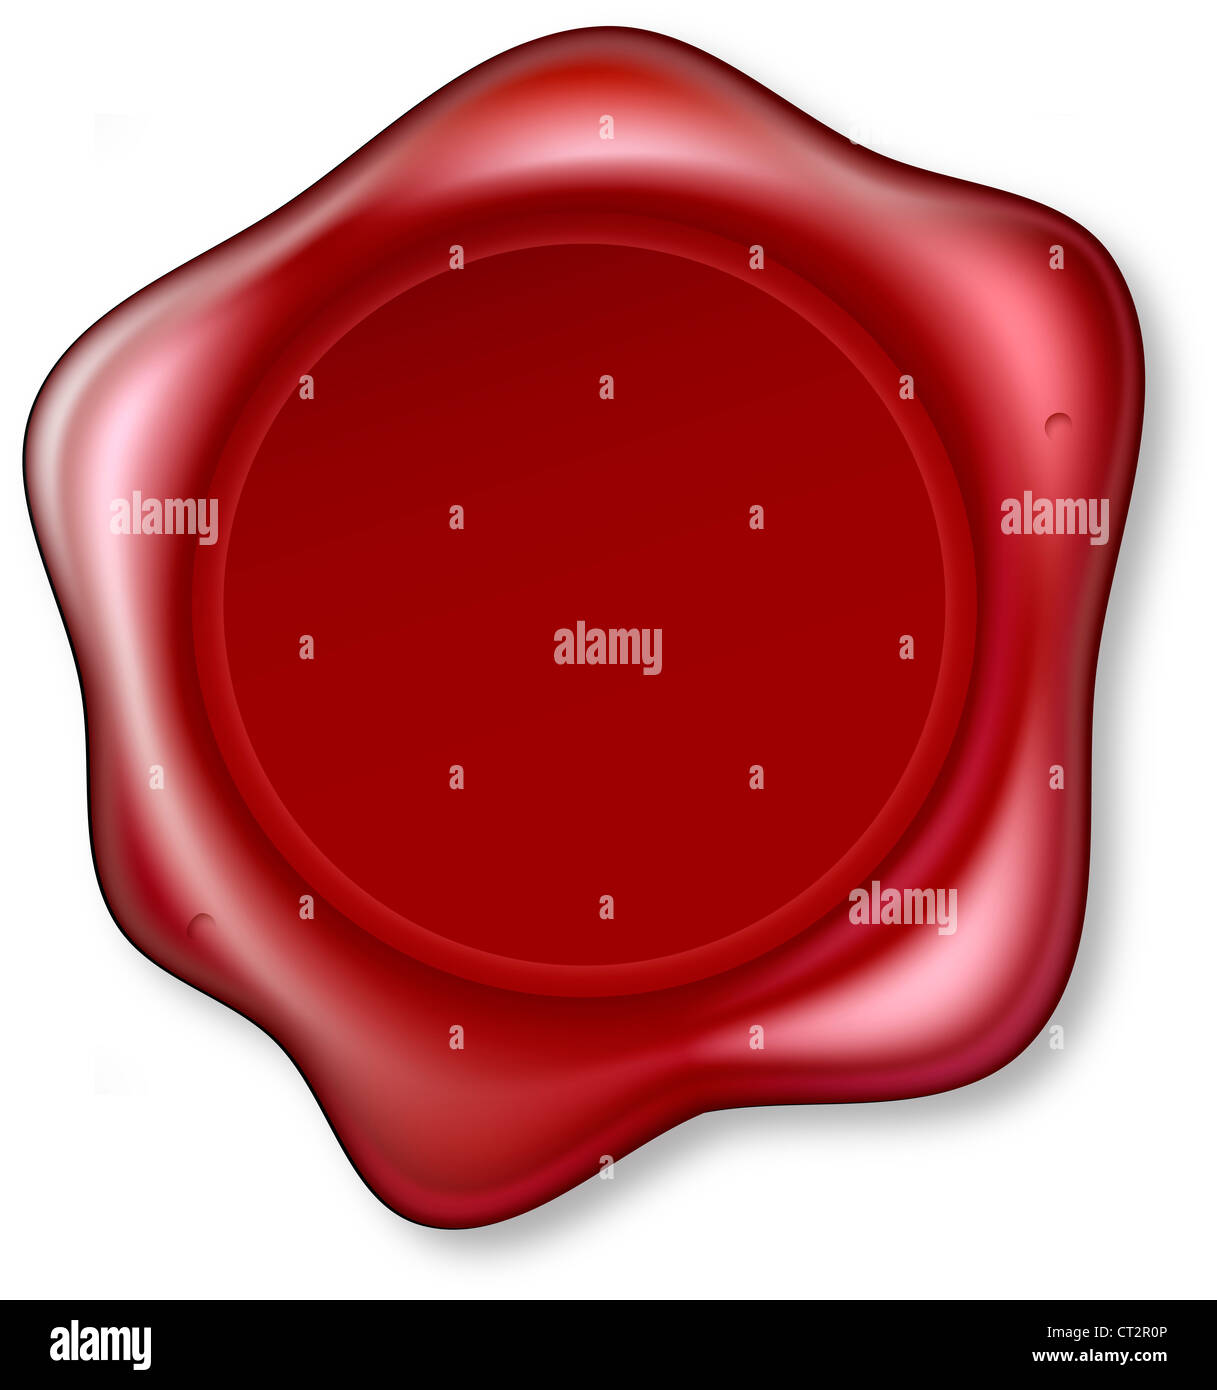 Grafik von rotem Siegellack, die geprägt wurde. Wachssiegel leer, so dass Sie Ihr Design in der Kreismitte platzieren können. Stockfoto